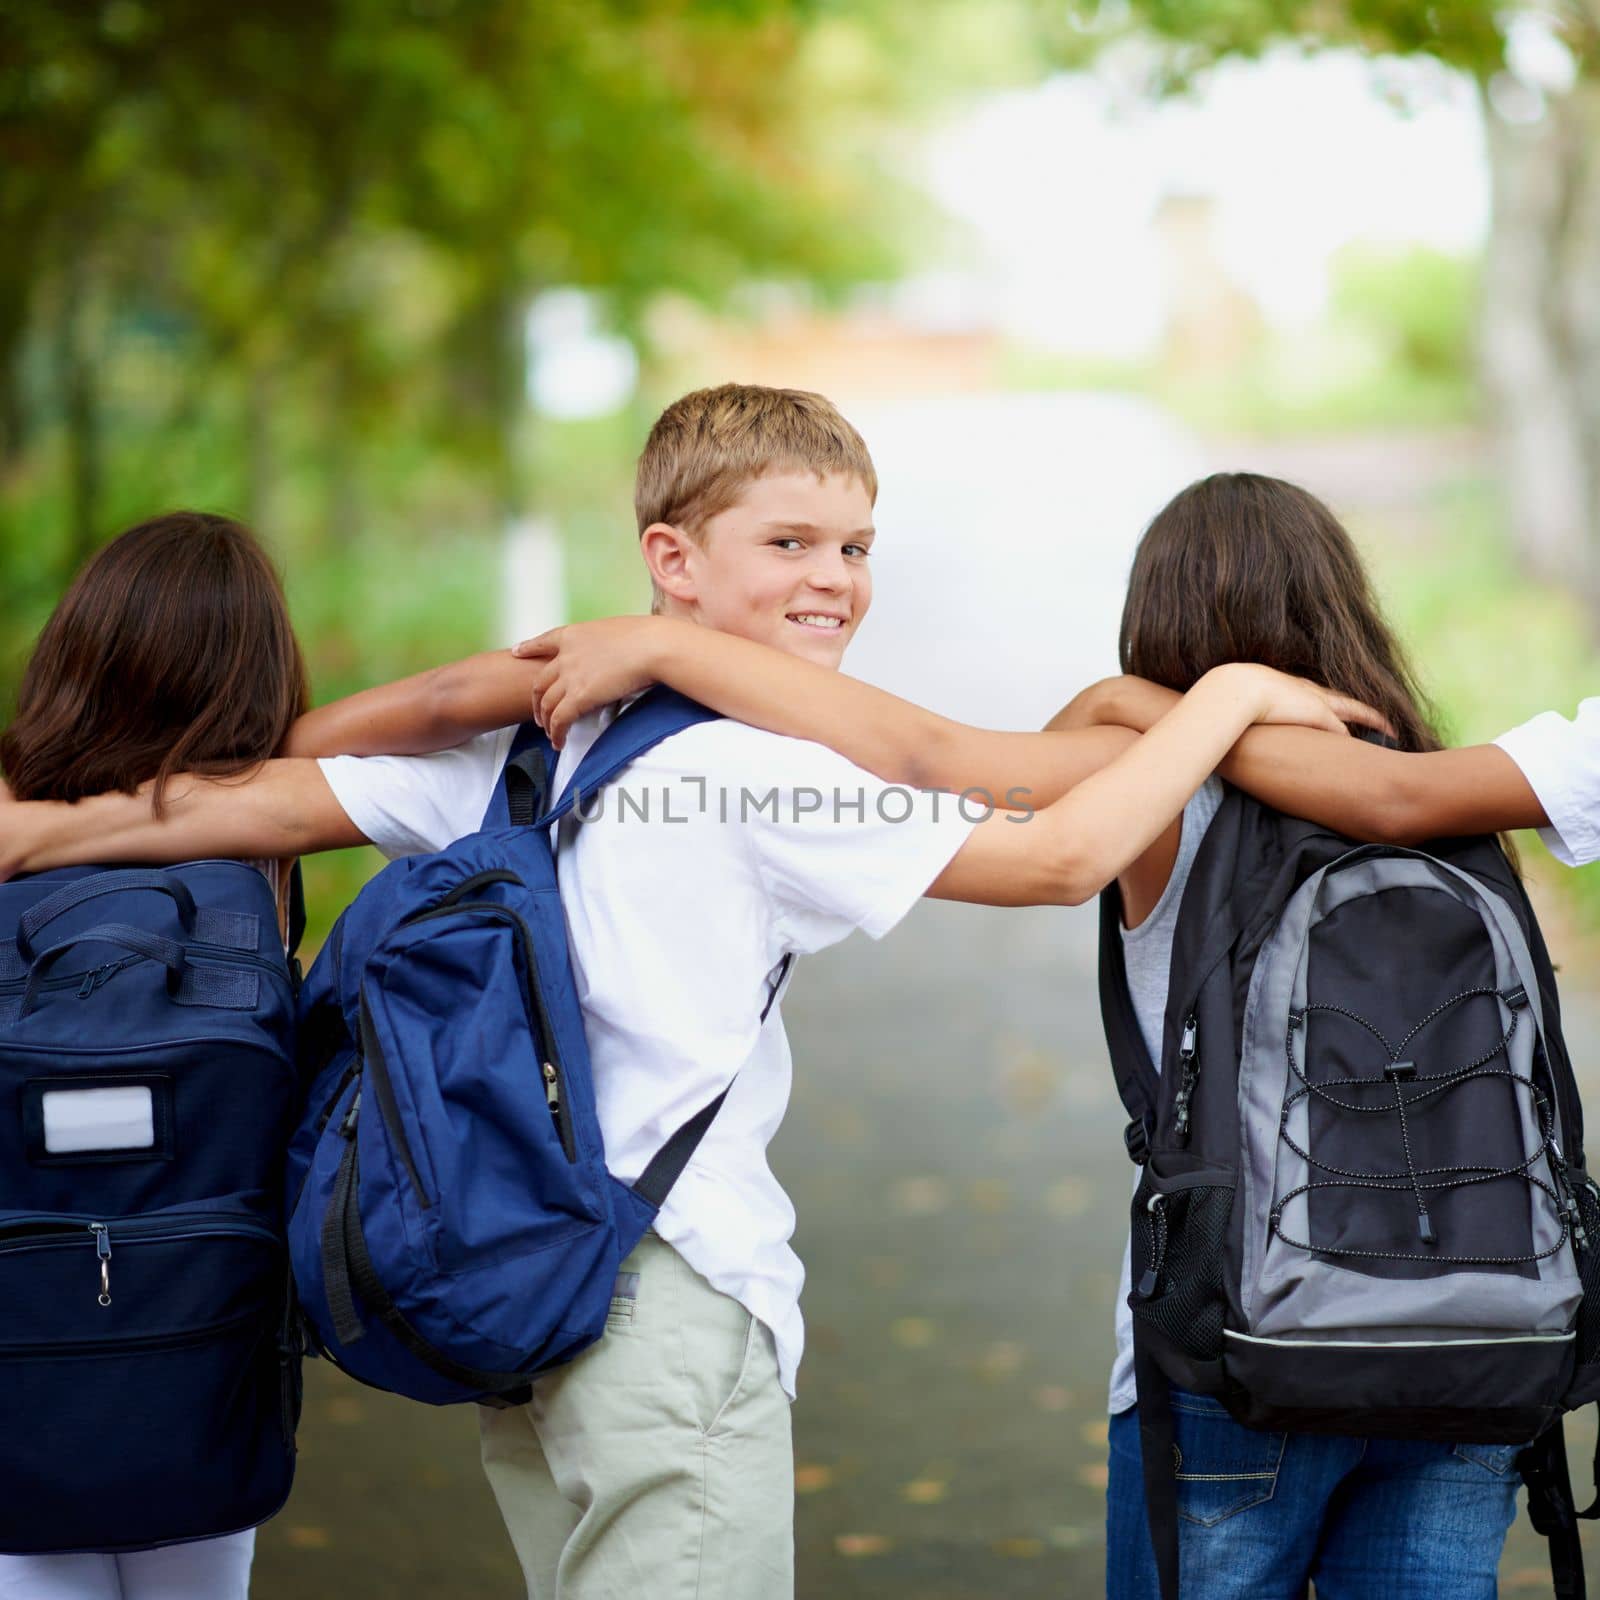 After school friendships. elementary school kids. by YuriArcurs